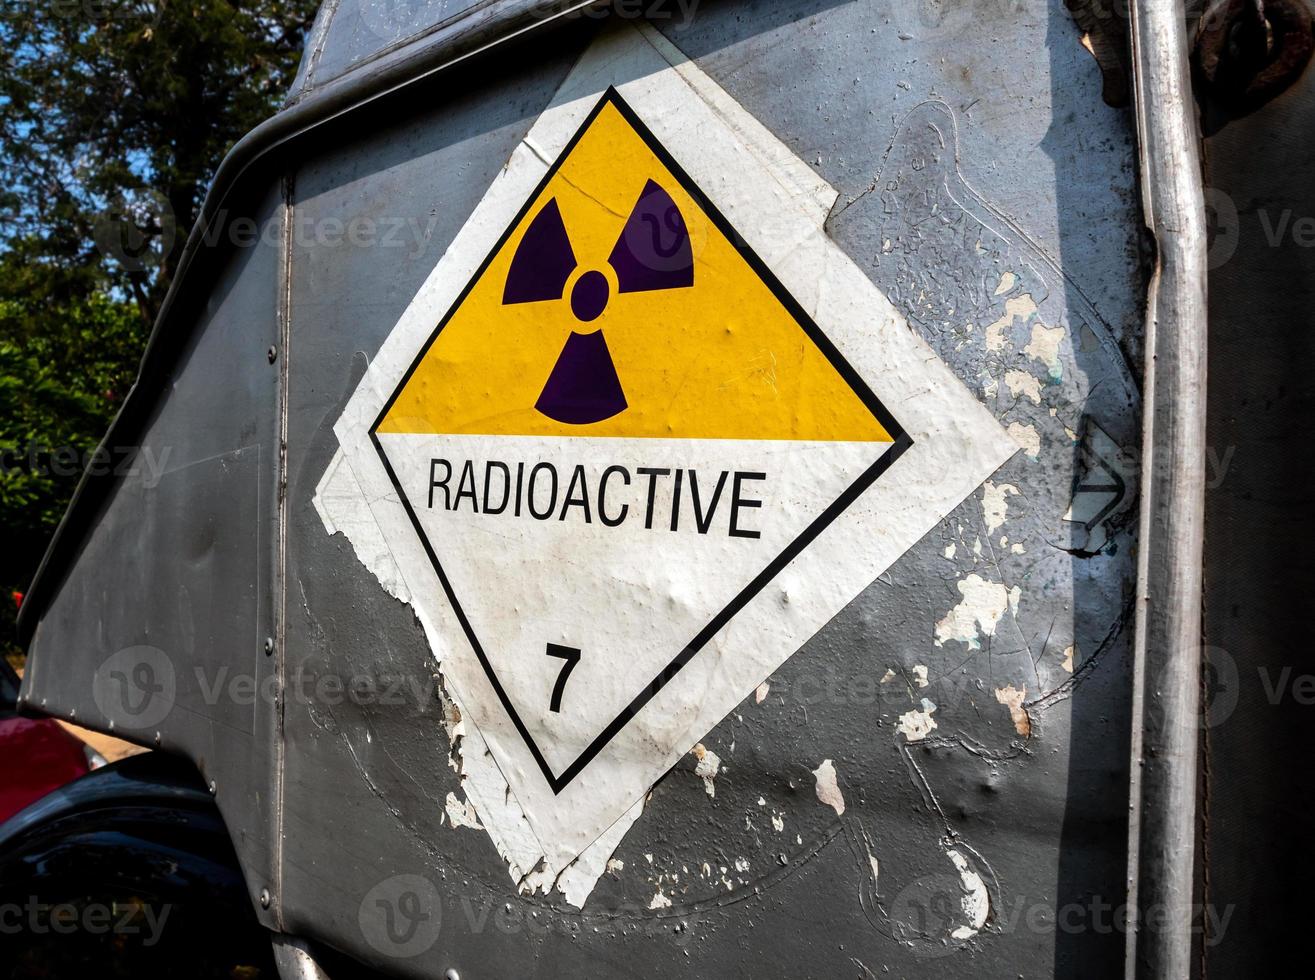 Señal de advertencia de radiación en la etiqueta de transporte de mercancías peligrosas clase 7 en el camión de transporte lateral foto